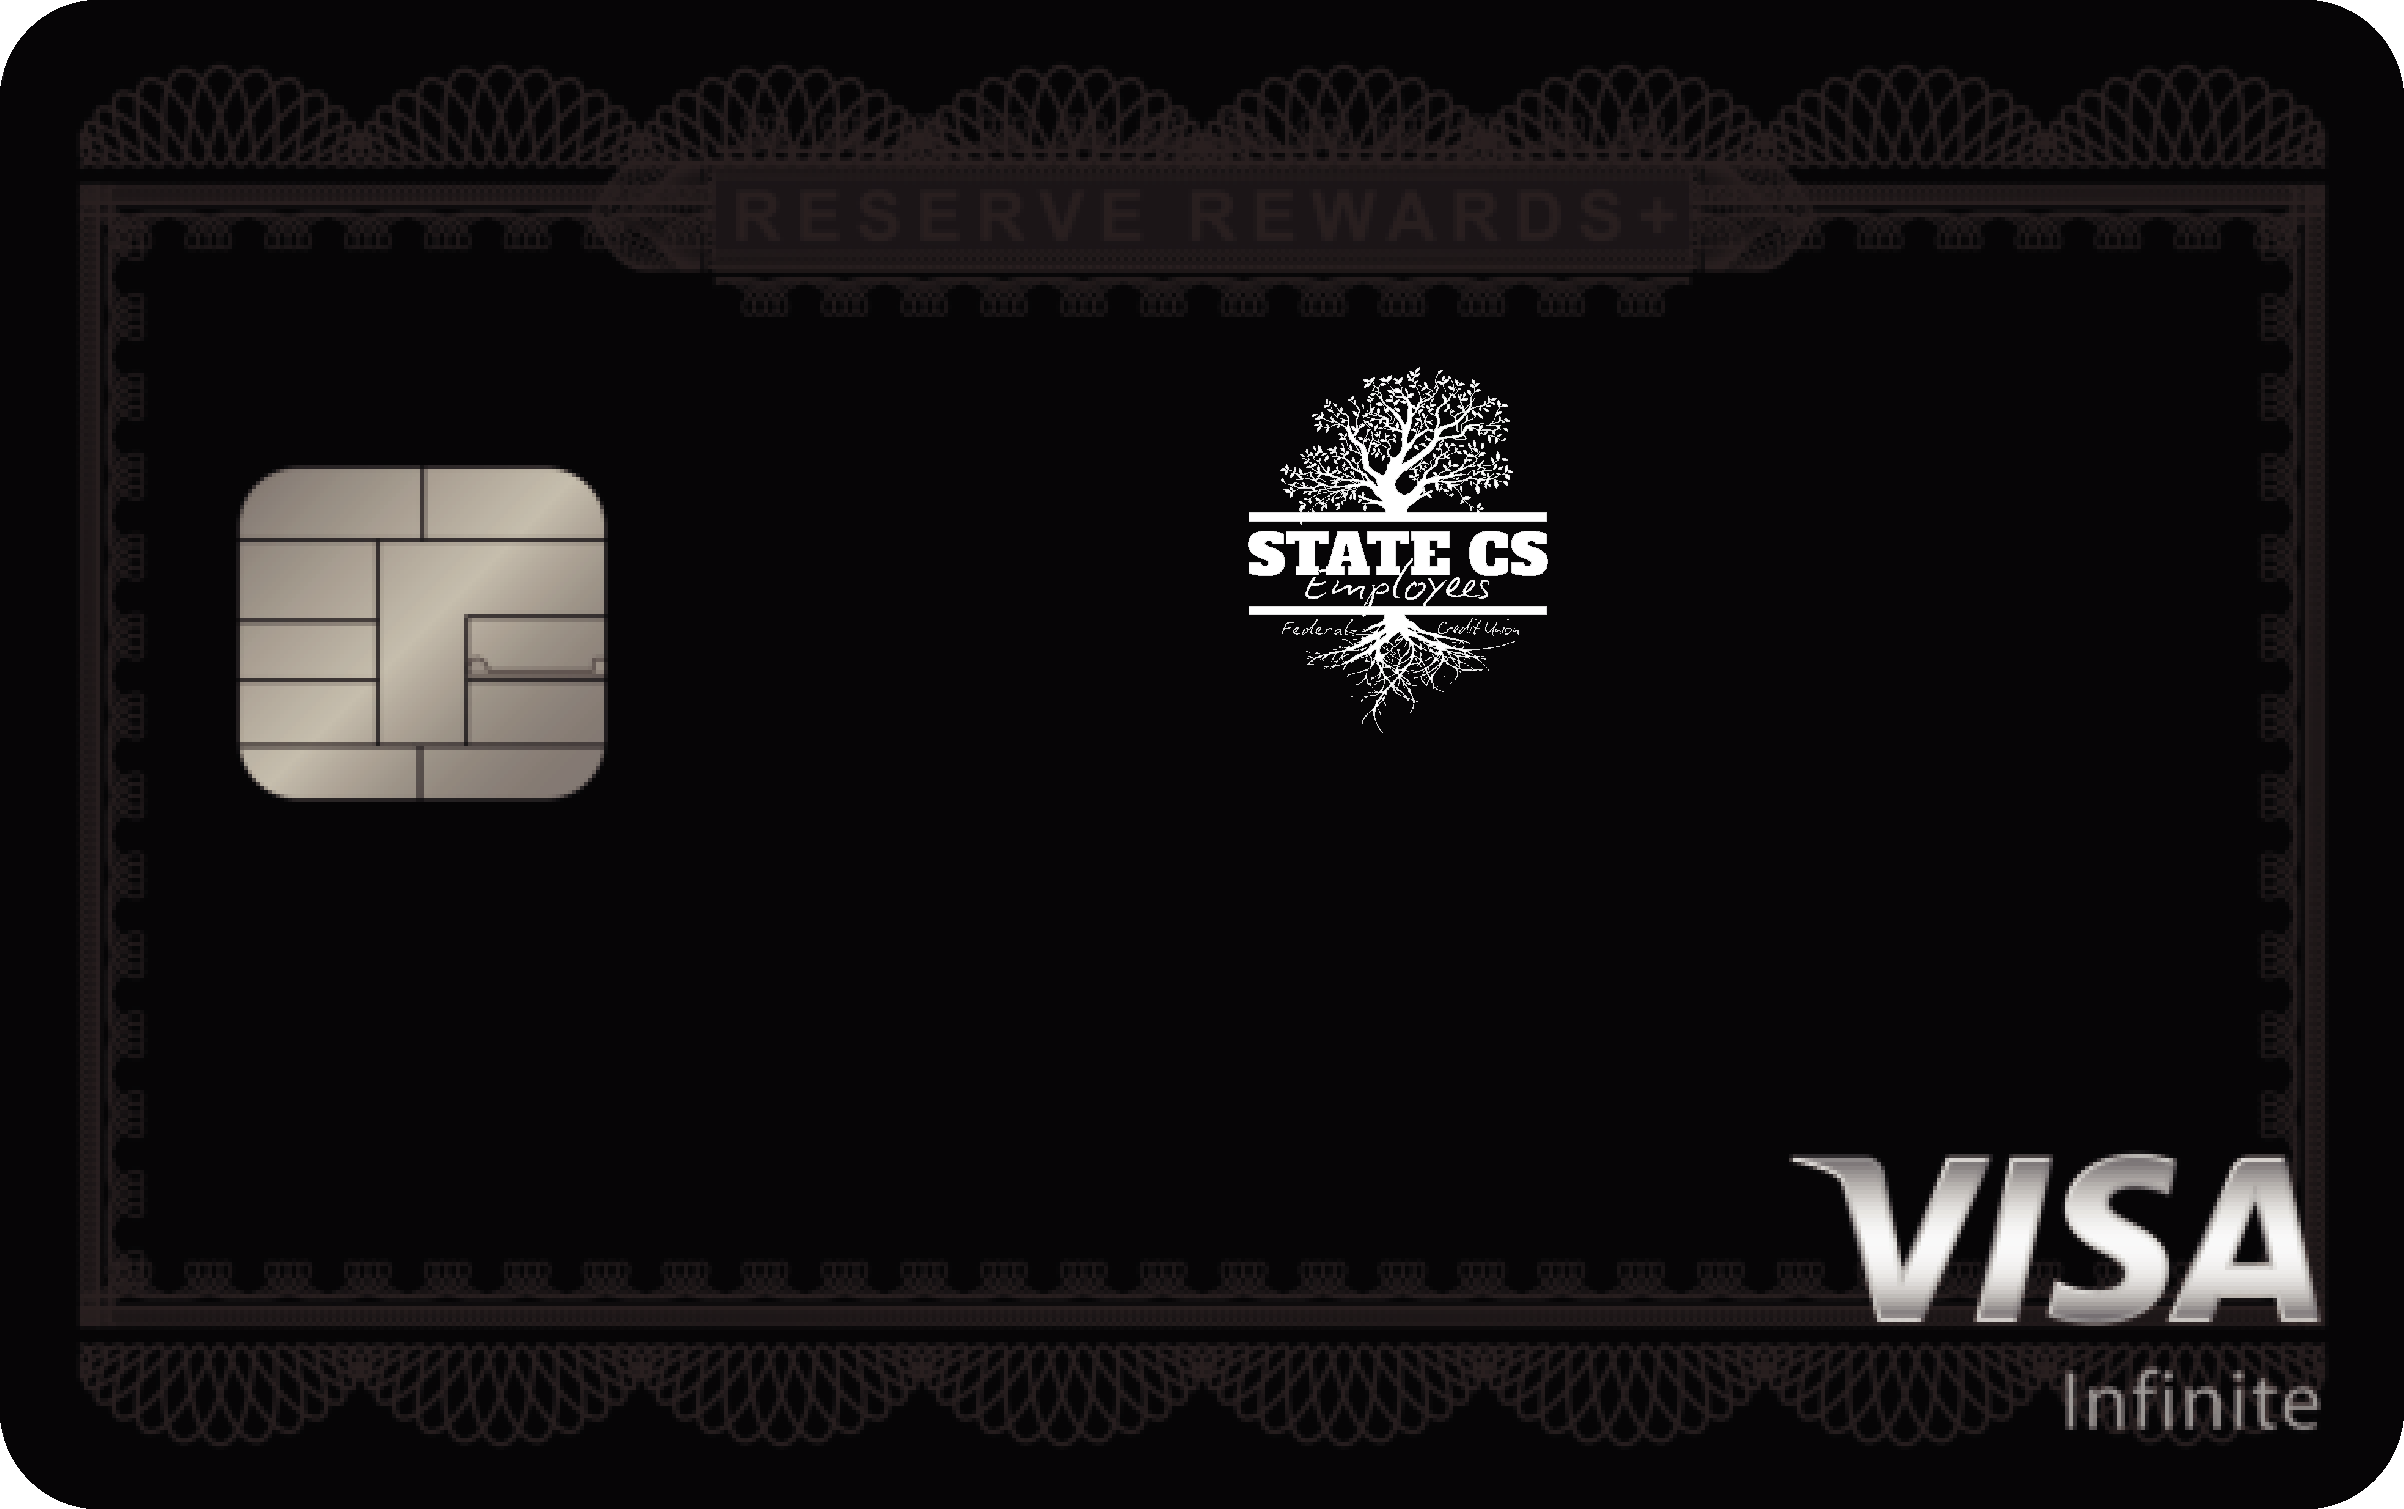 State CS Employee FCU Reserve Rewards+ Card